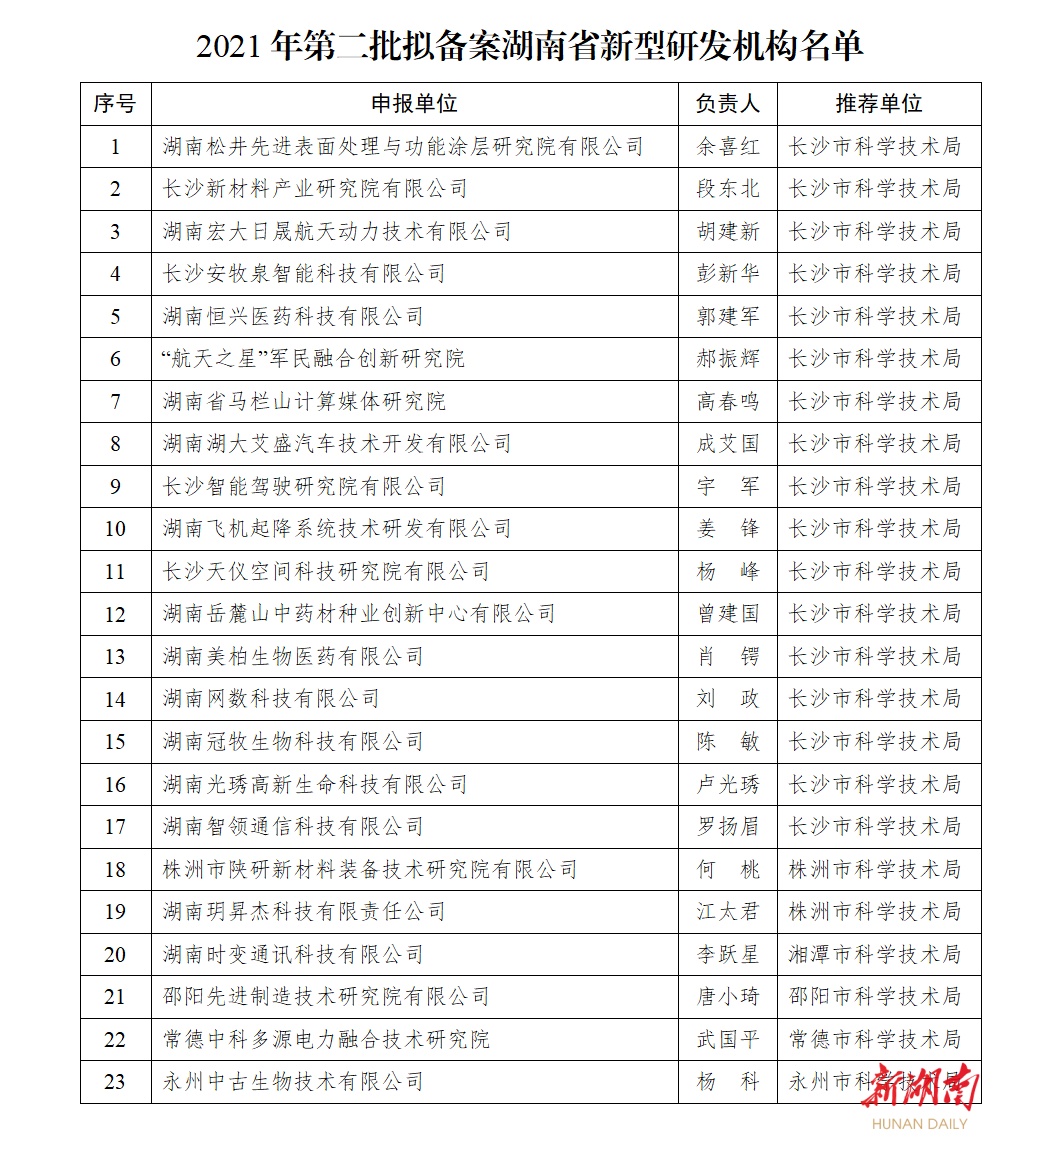 第二批！湖南省新型研发机构备案及培育名单正在公示